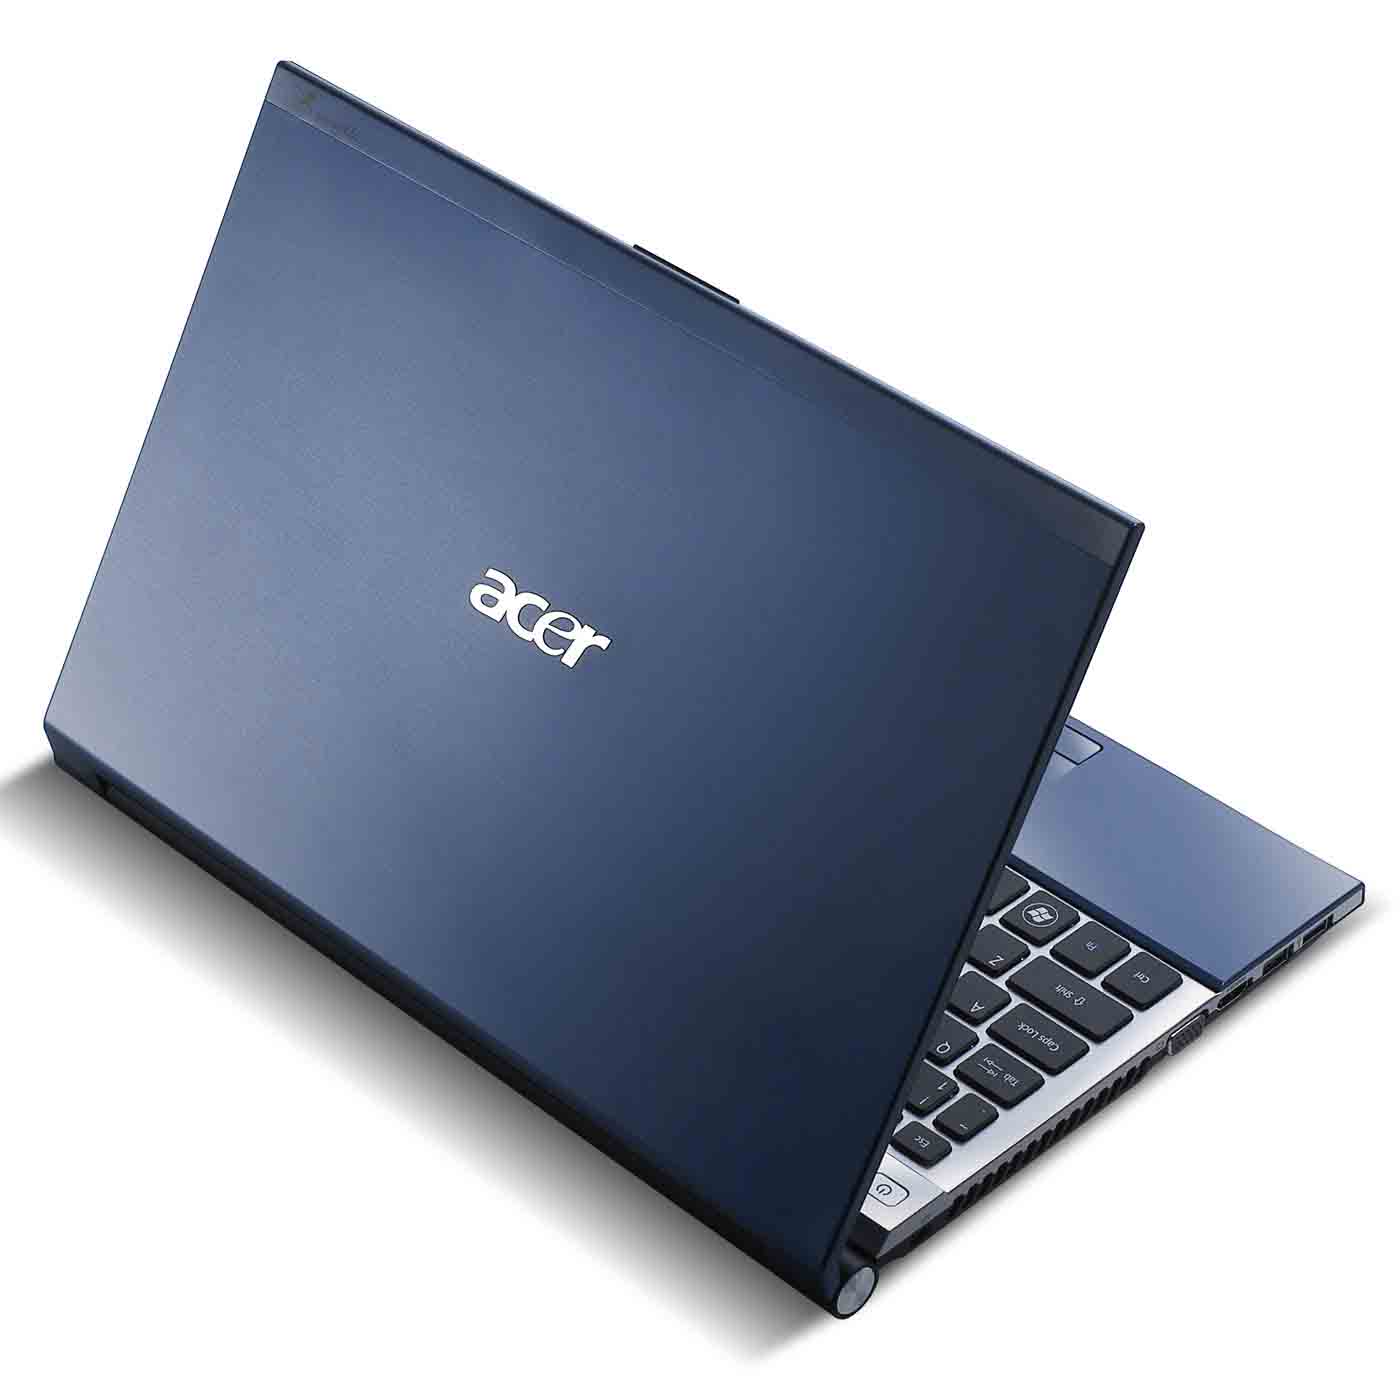 Acer TimelineX 4830TG i3 Laptop 08hours Backup large image 0